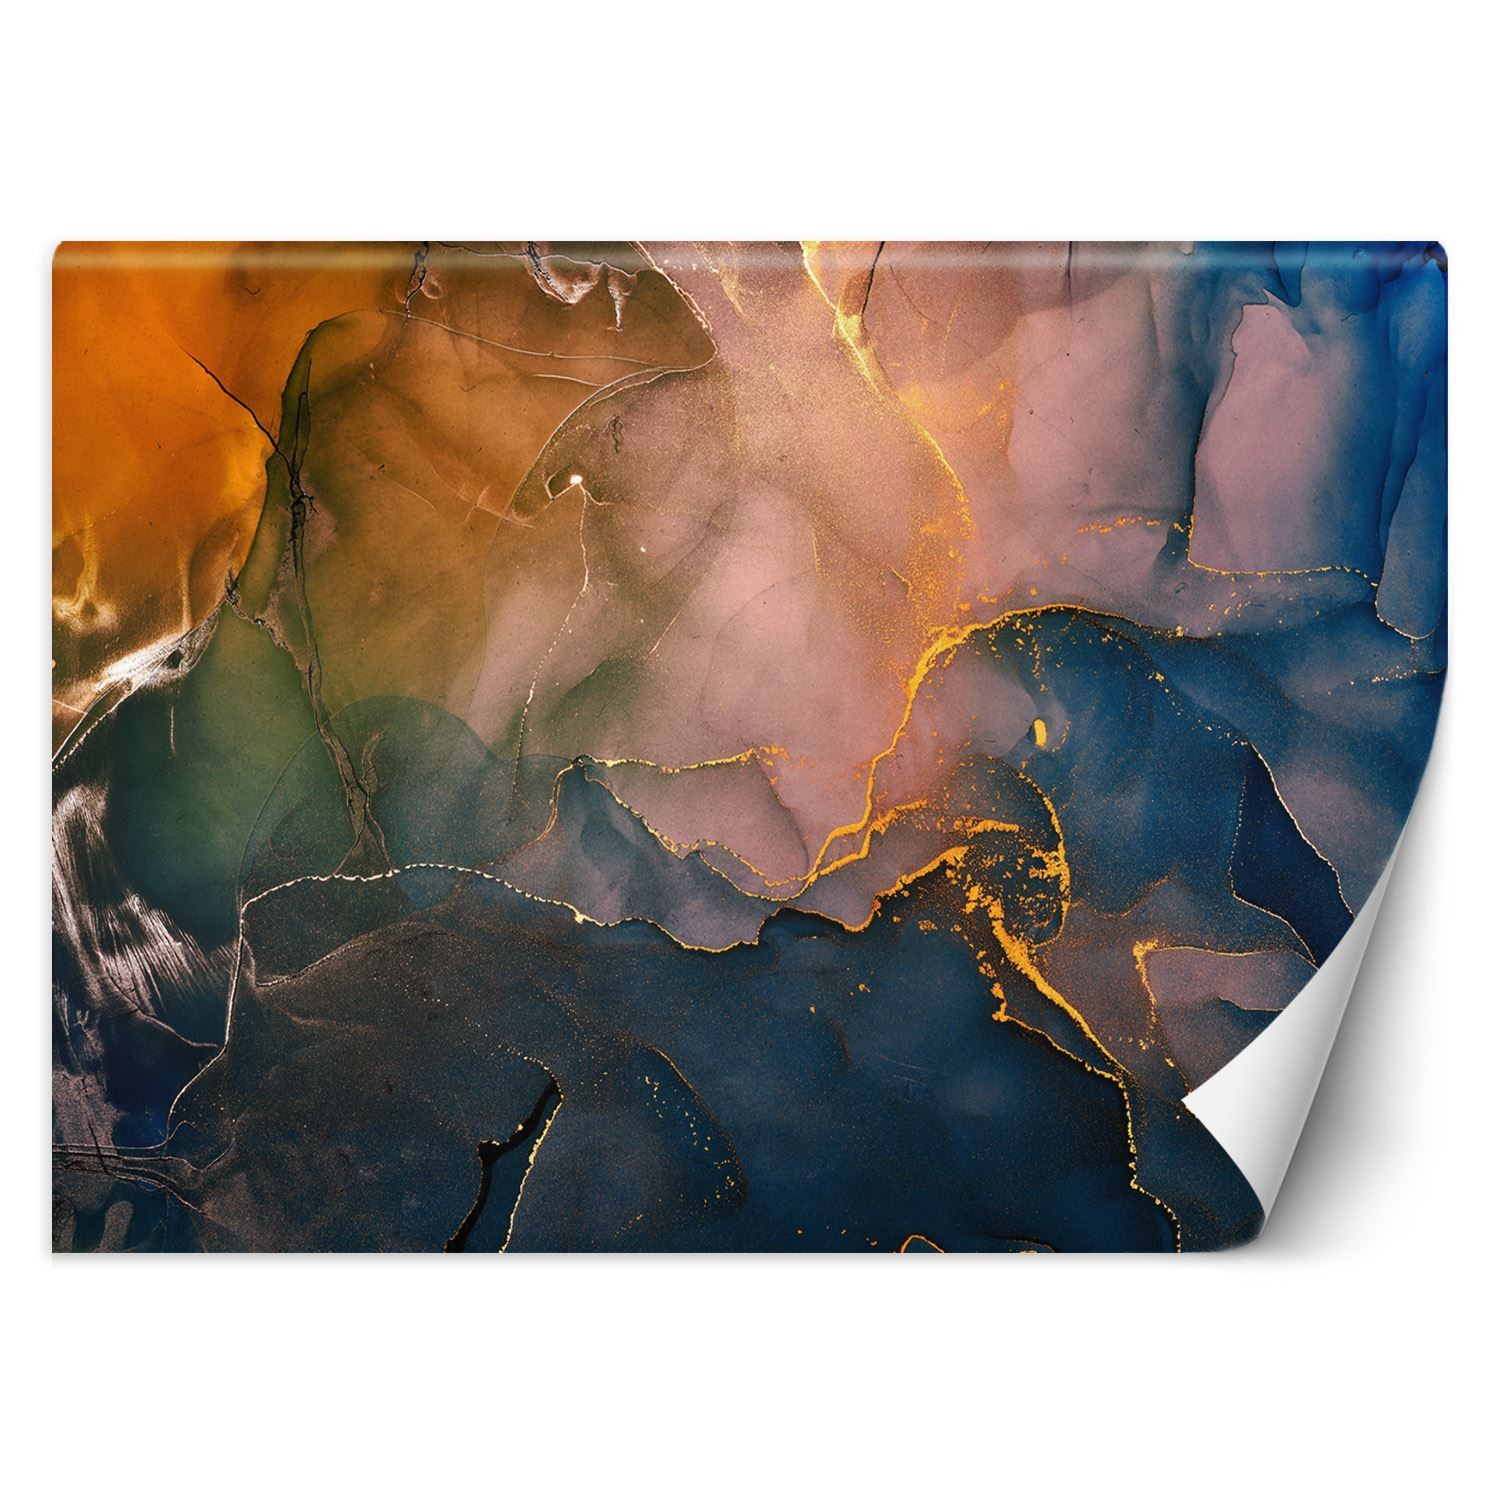 Trend24 – Behang – Kleurrijke Abstractie – Vliesbehang – Fotobehang 3D – Behang Woonkamer – 350x245x2 cm – Incl. behanglijm